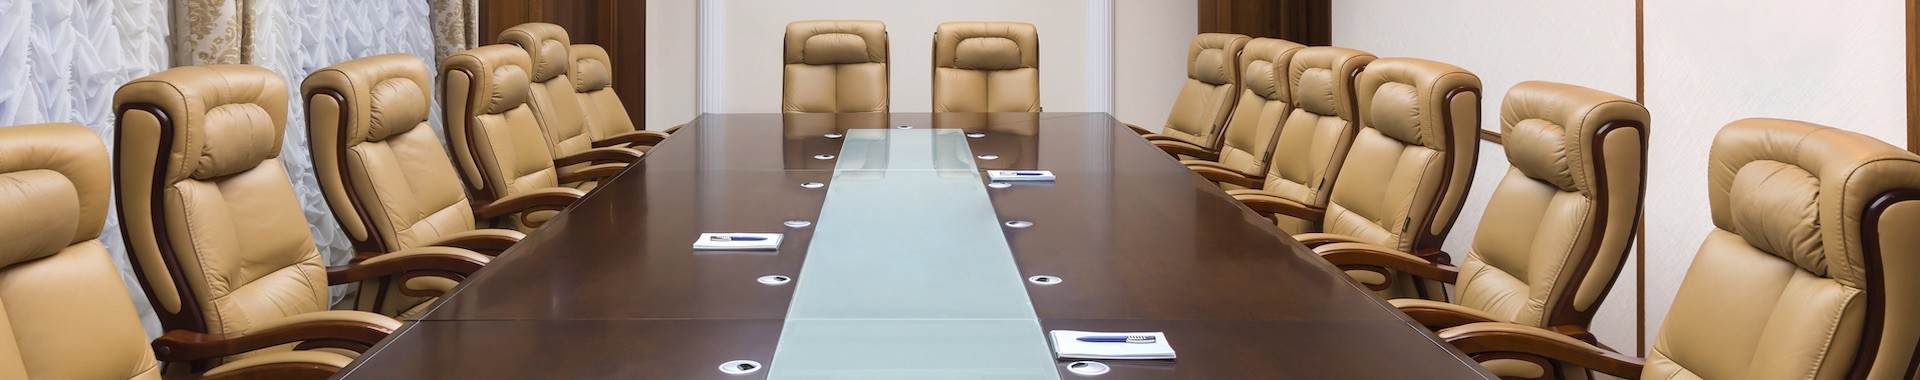 Meeting Room Rentals